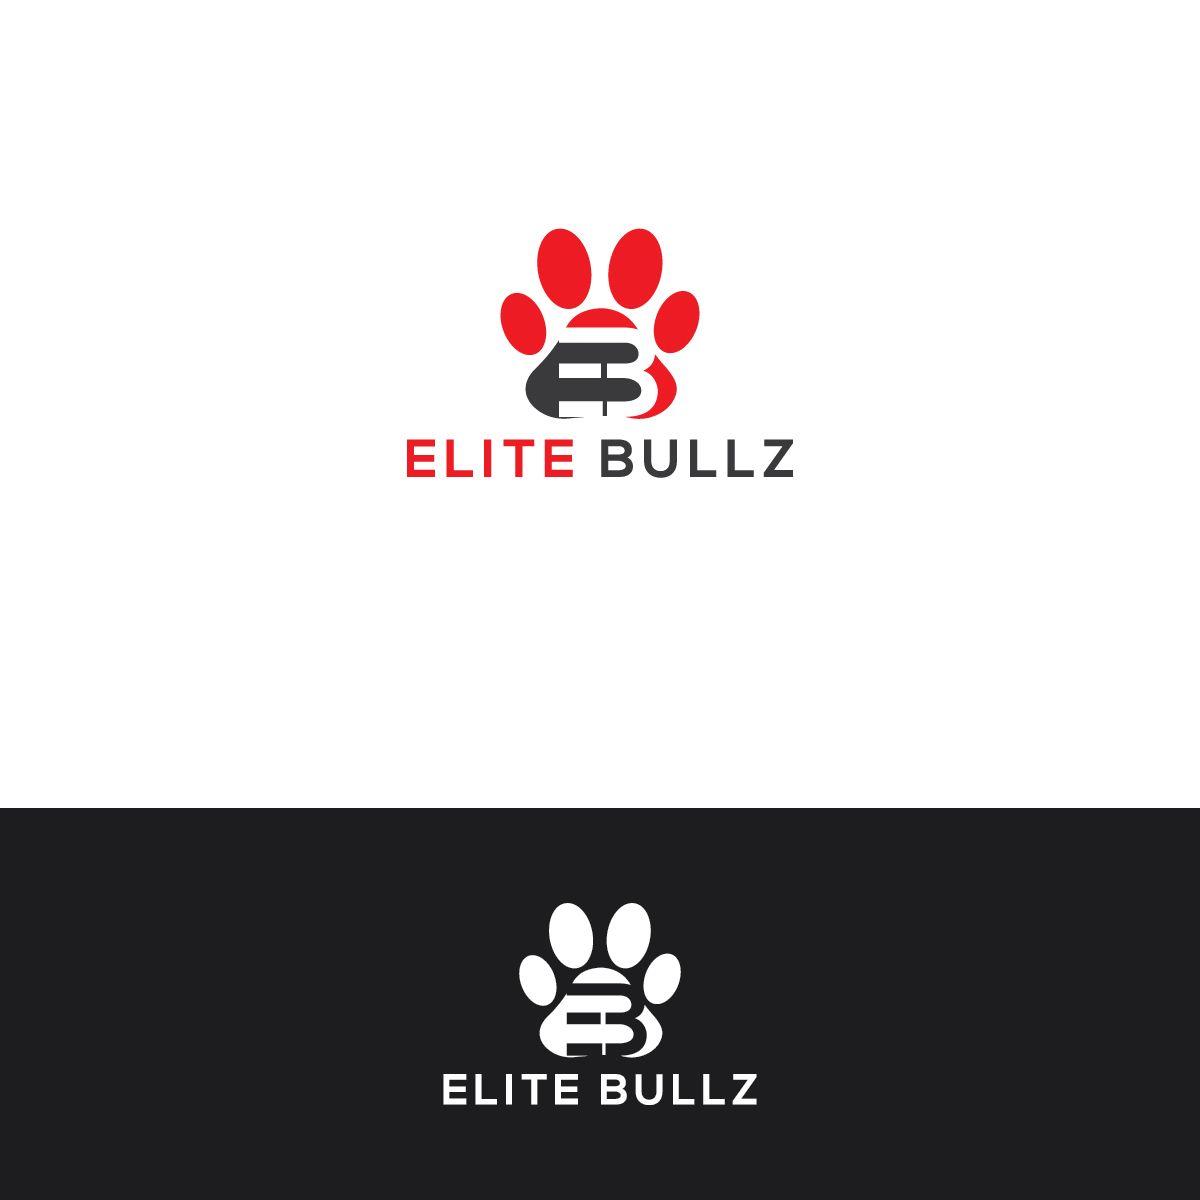 Bullz Logo - Bold, Modern Logo Design for Elite Bullz by Deziner Zone | Design ...